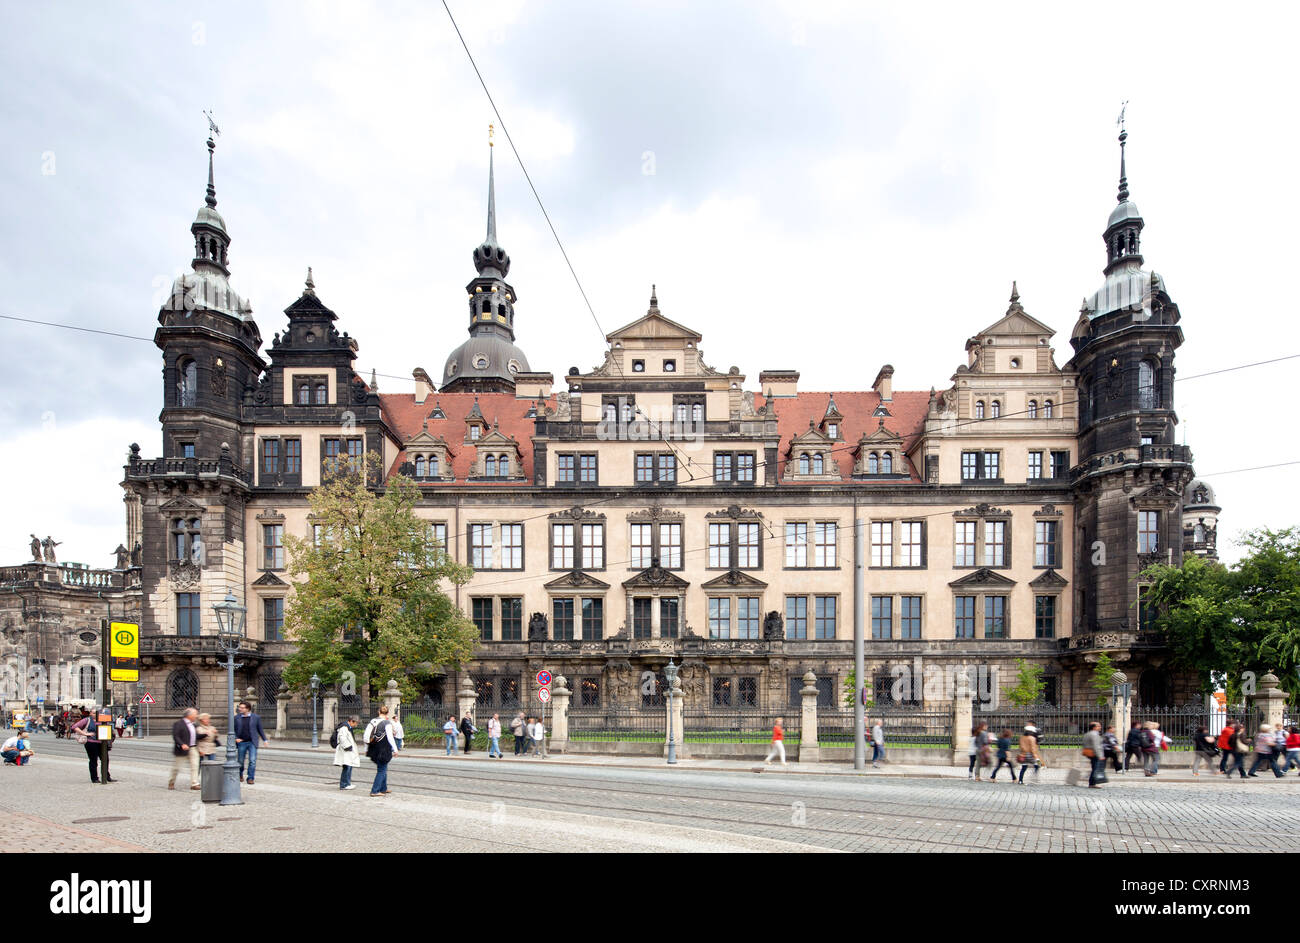 Königspalast, Dresden, Sachsen, Deutschland, Europa, PublicGround Stockfoto